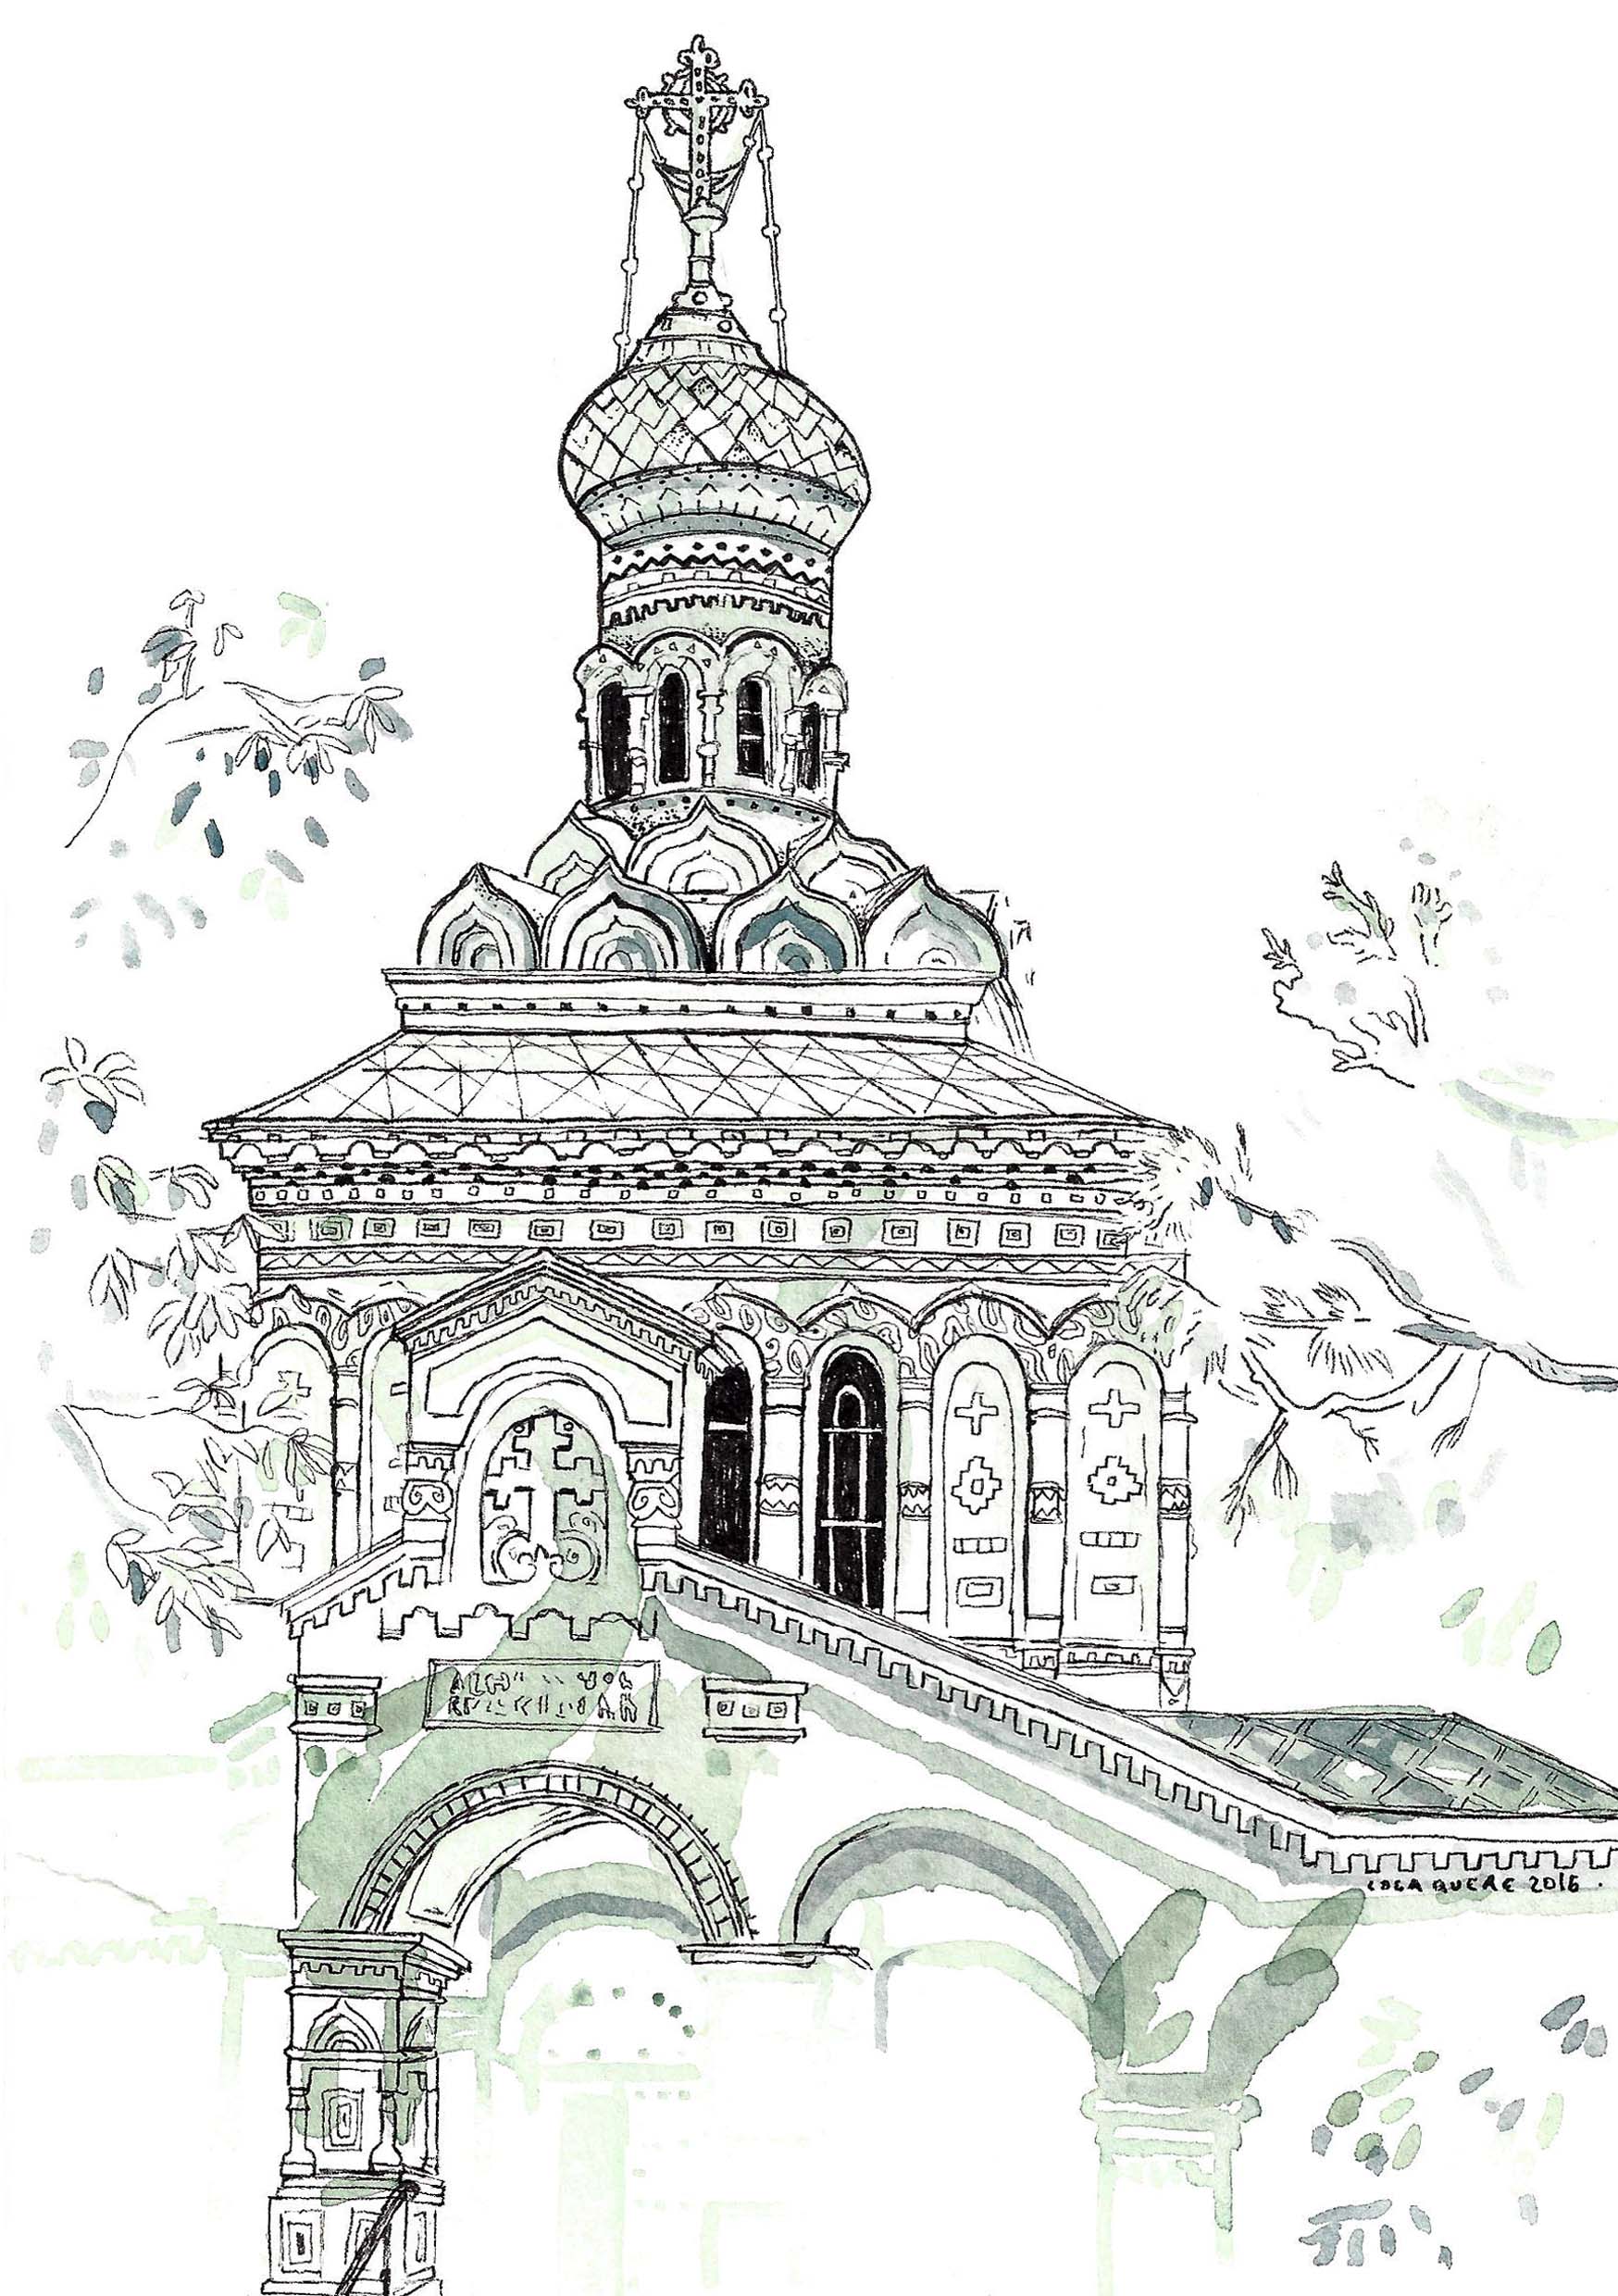 St Barbara Orthodox Chruch de Vevey - Aquarelle et stylo sur papier - 2016